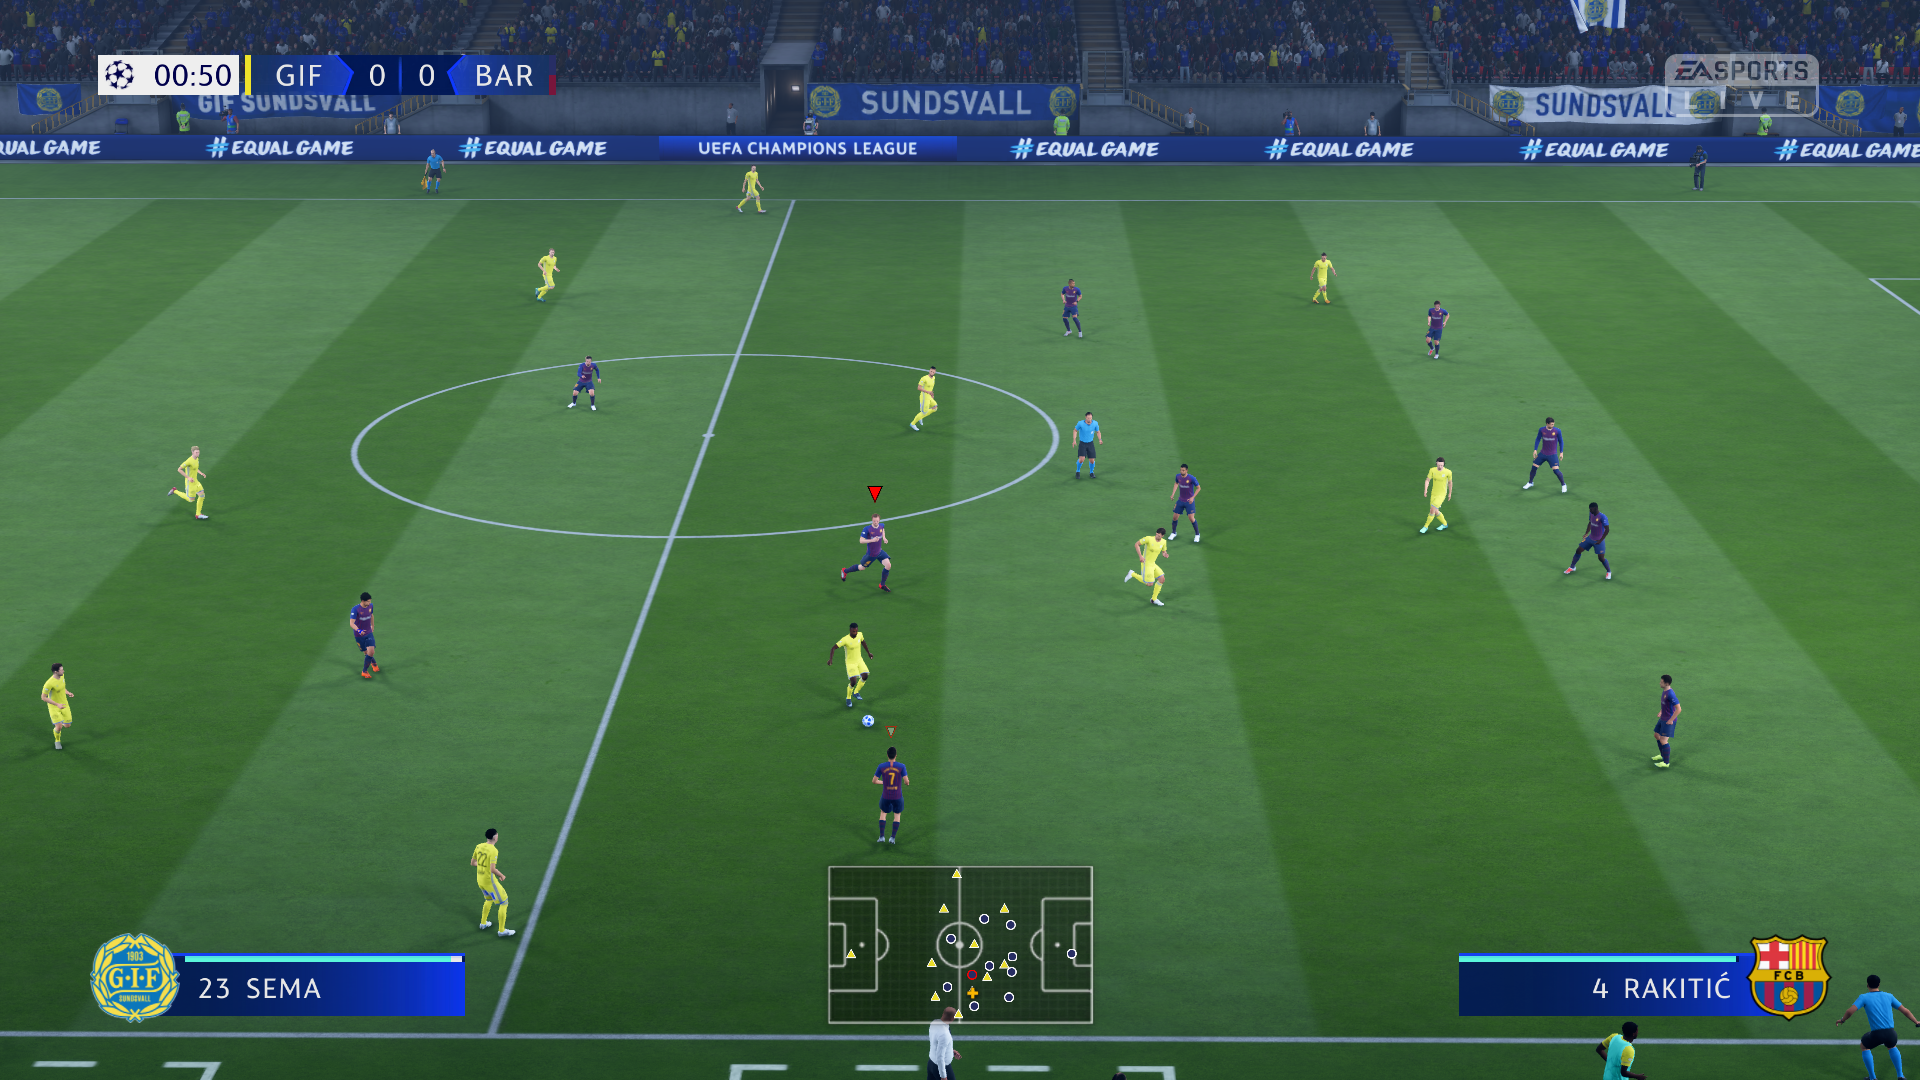 معرفی بازی FIFA 19 و سیستم مورد نیاز آن برای کامپیوتر